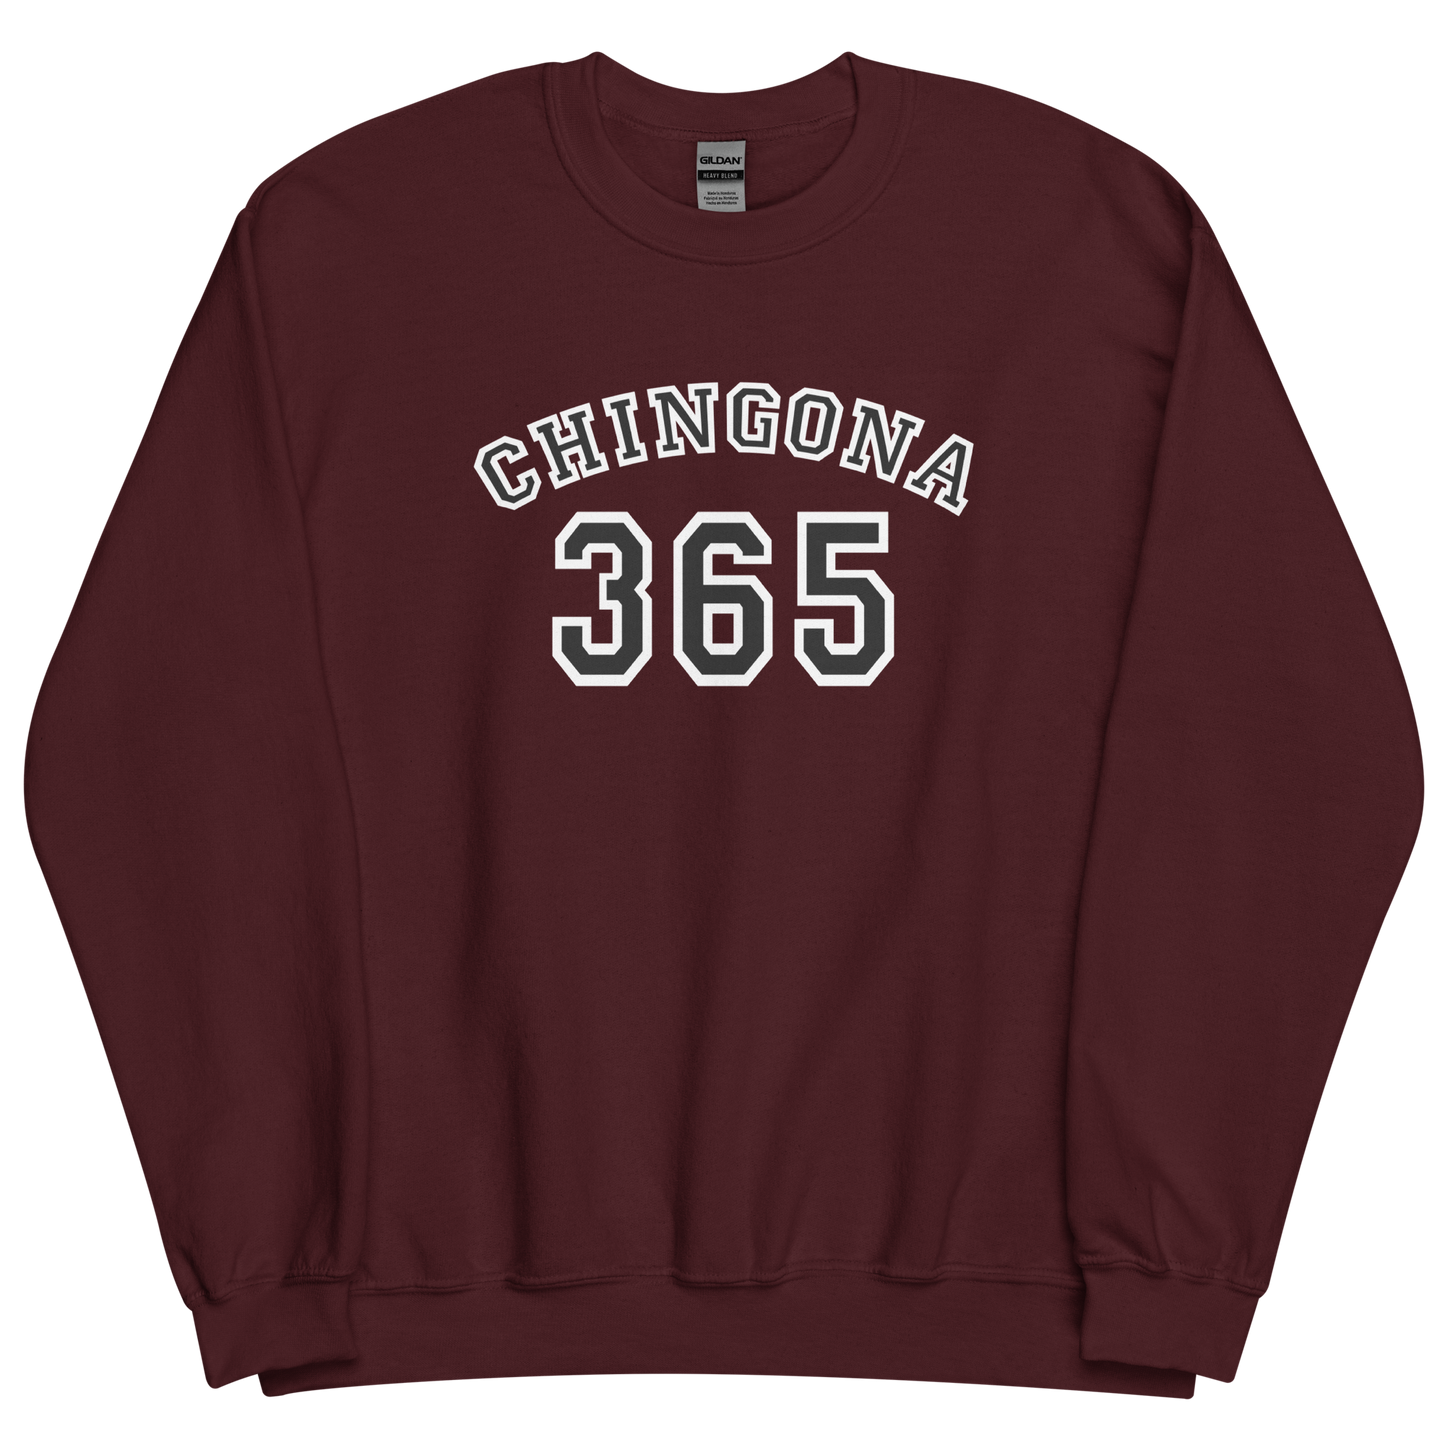 Chingona 365 - Unisex Sweatshirt